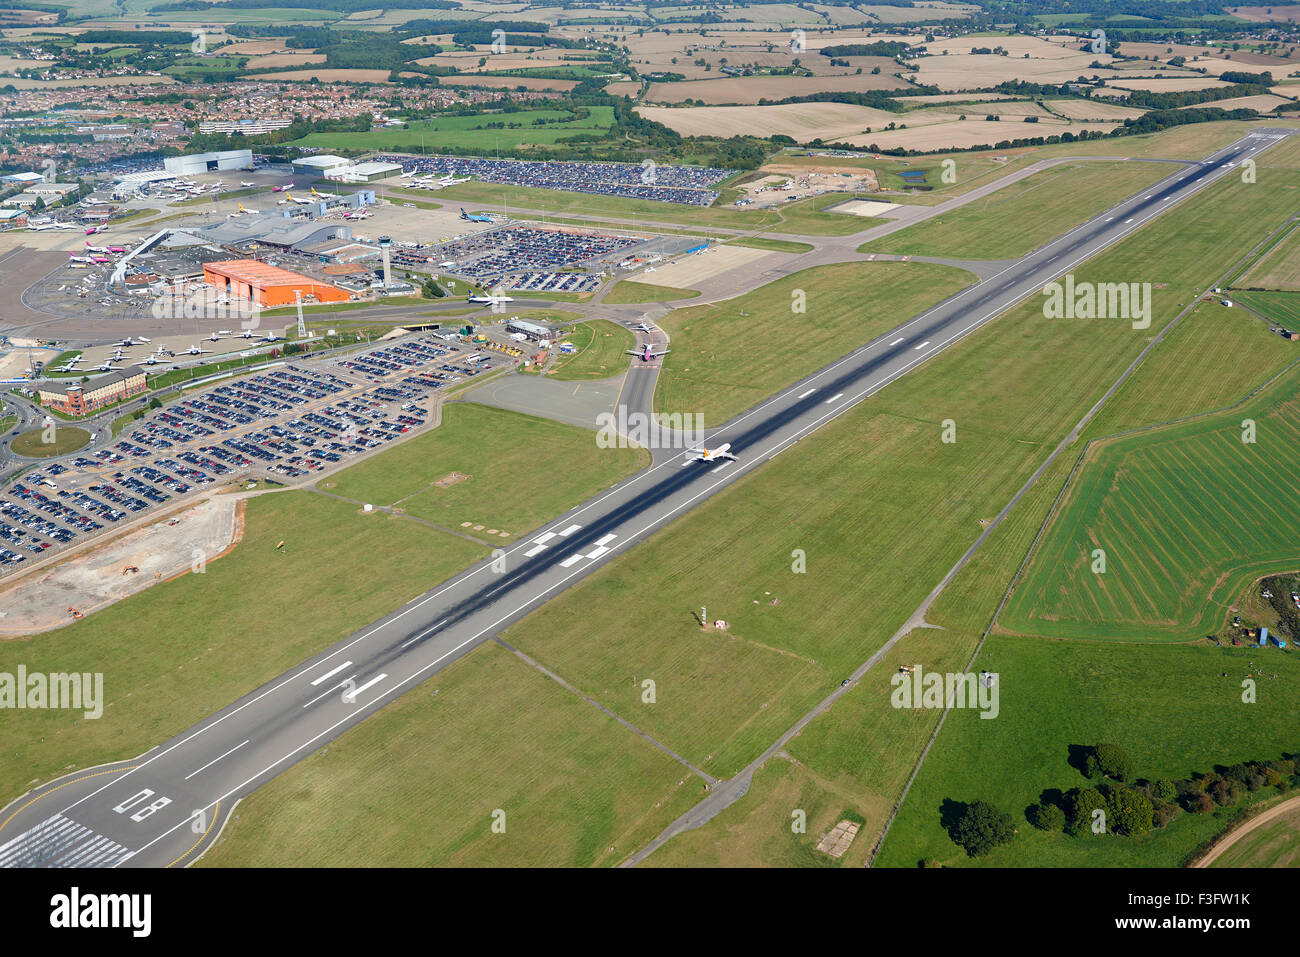 Une vue aérienne de l'aéroport de Luton, Angleterre du Sud-Est, Royaume-Uni Banque D'Images